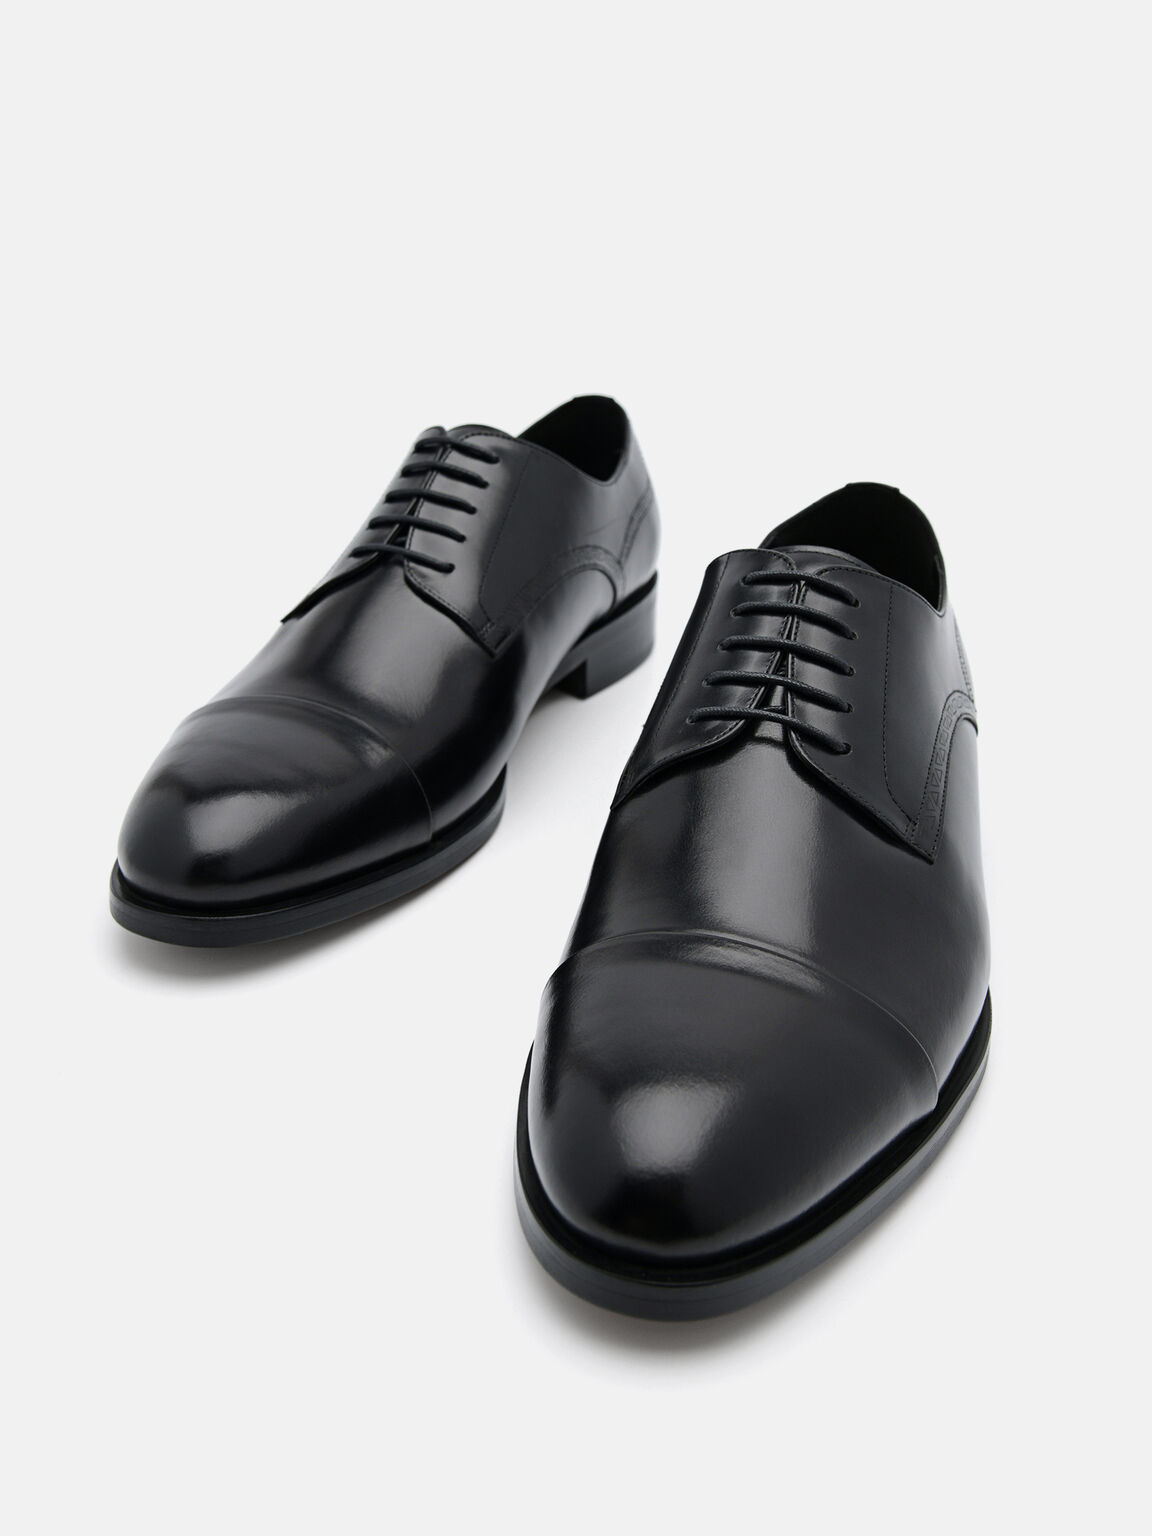 Leather Cap Toe Derby Shoes, Black